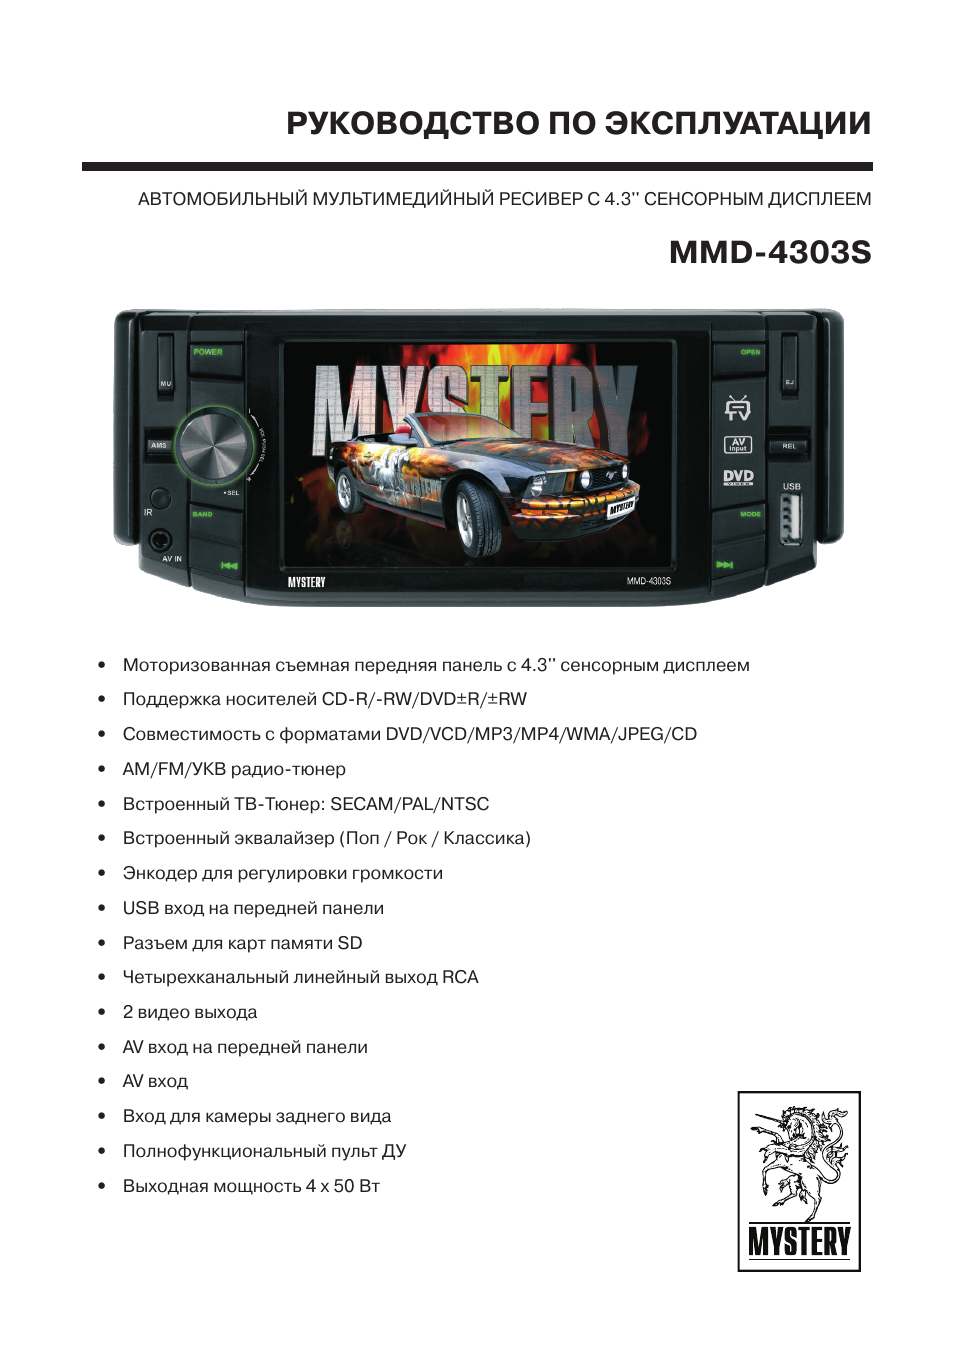 Инструкция по эксплуатации Mystery MMD-4303S | 31 cтраница